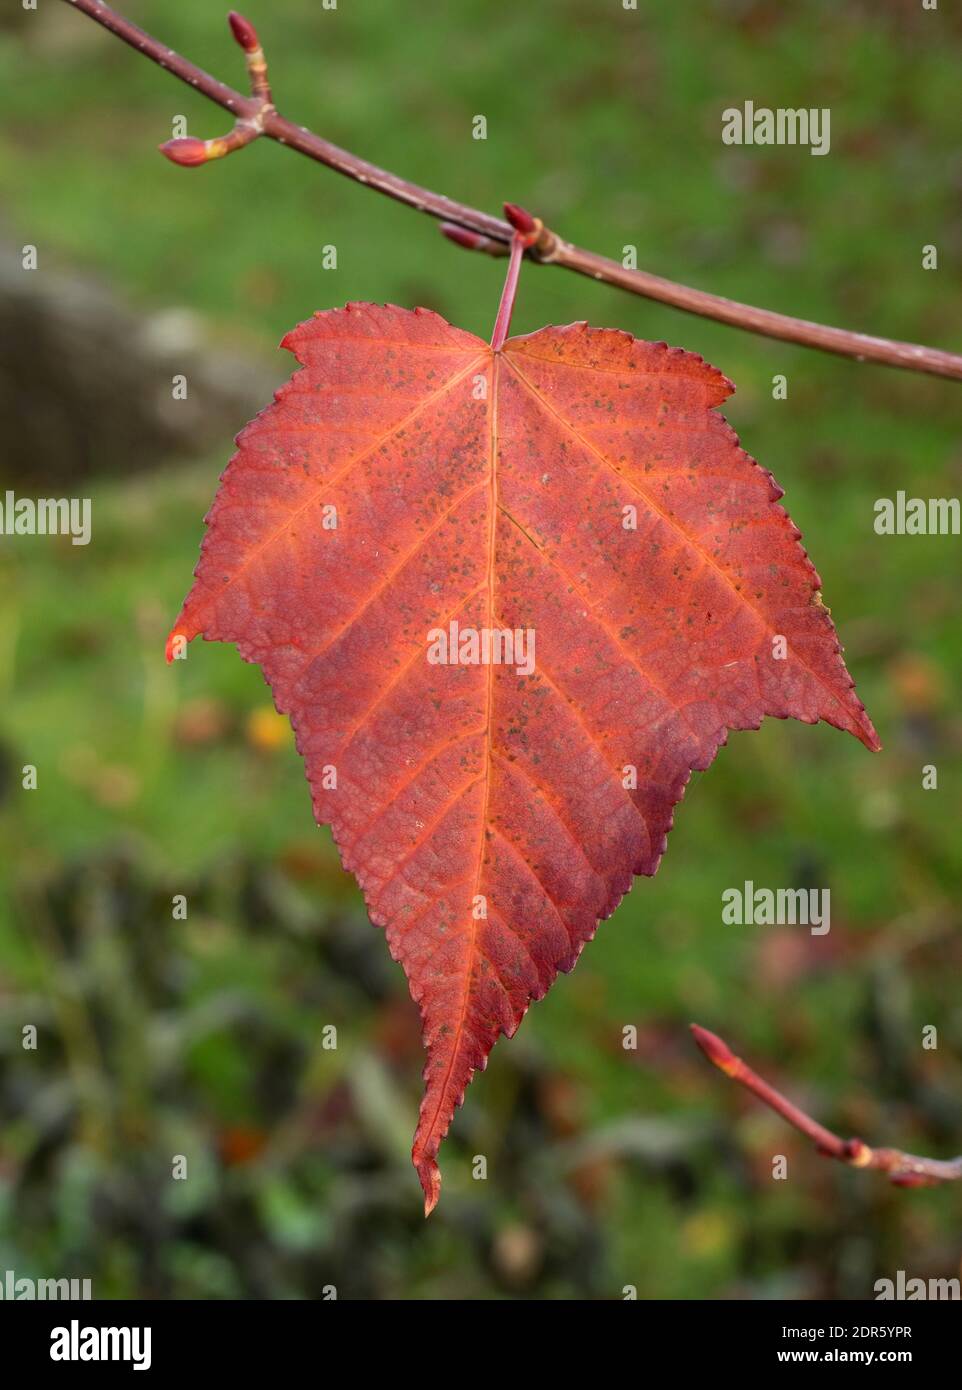 Single leaf of Snakebark Maple, Acer davidii, in Autumn, Worcestershire, UK. Stock Photo